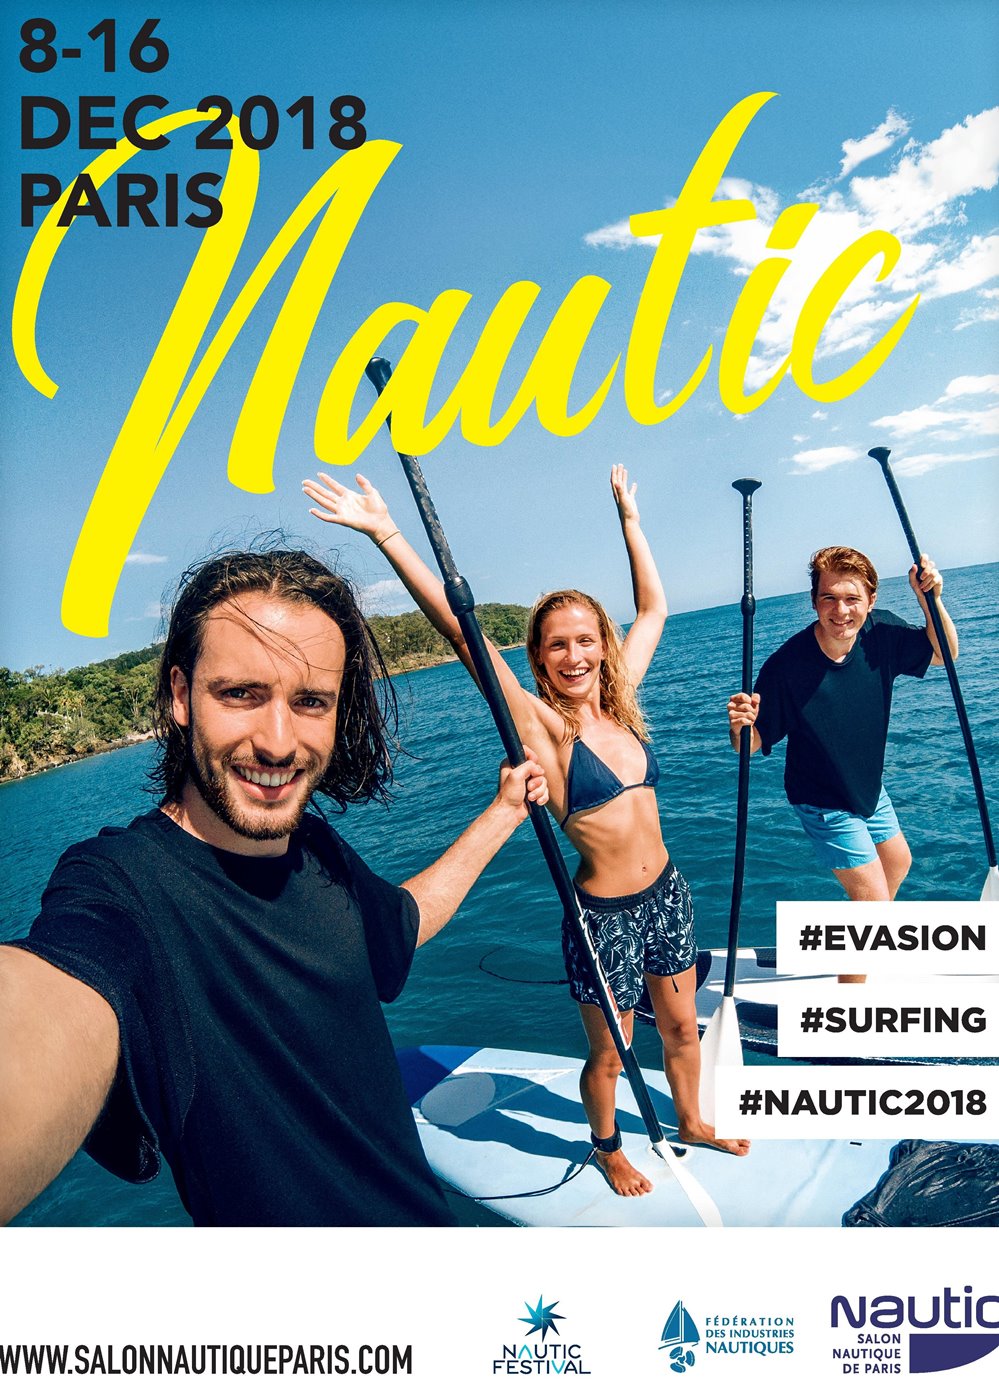 Nautic 2018